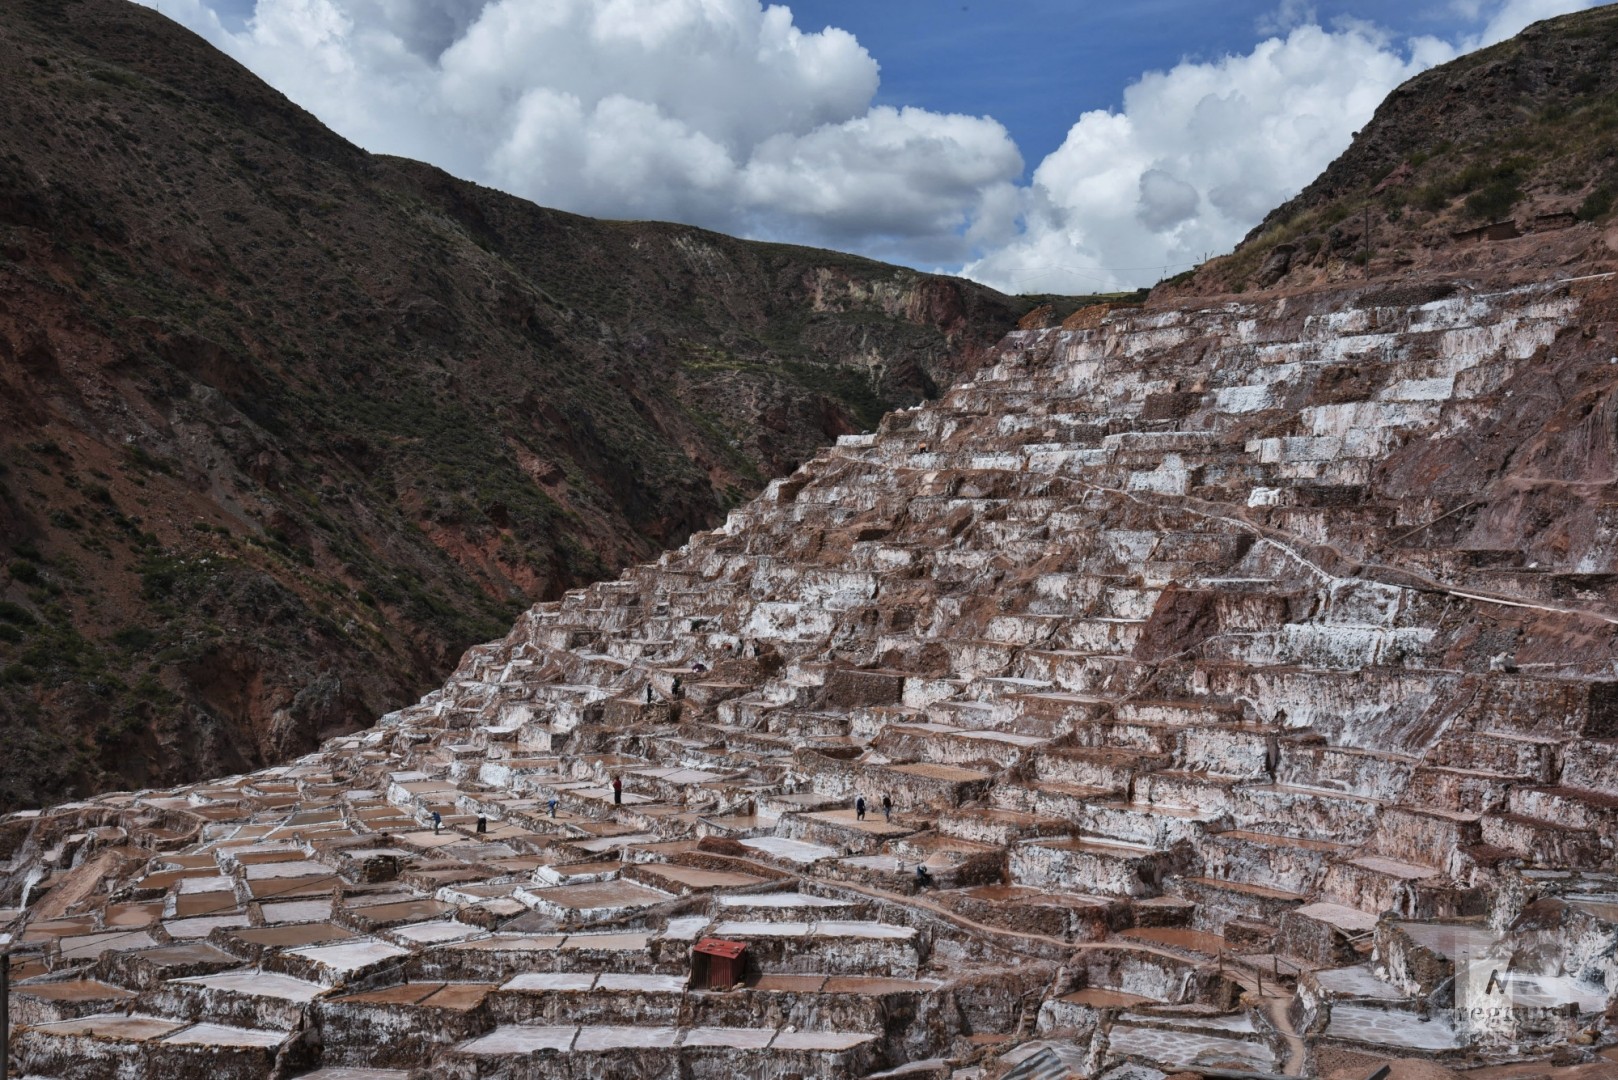 Салинас-де-Марас, соляные копи — самые высокие соляные террасы в мире, созданные руками человека. Салинас-де-Марас, Перу